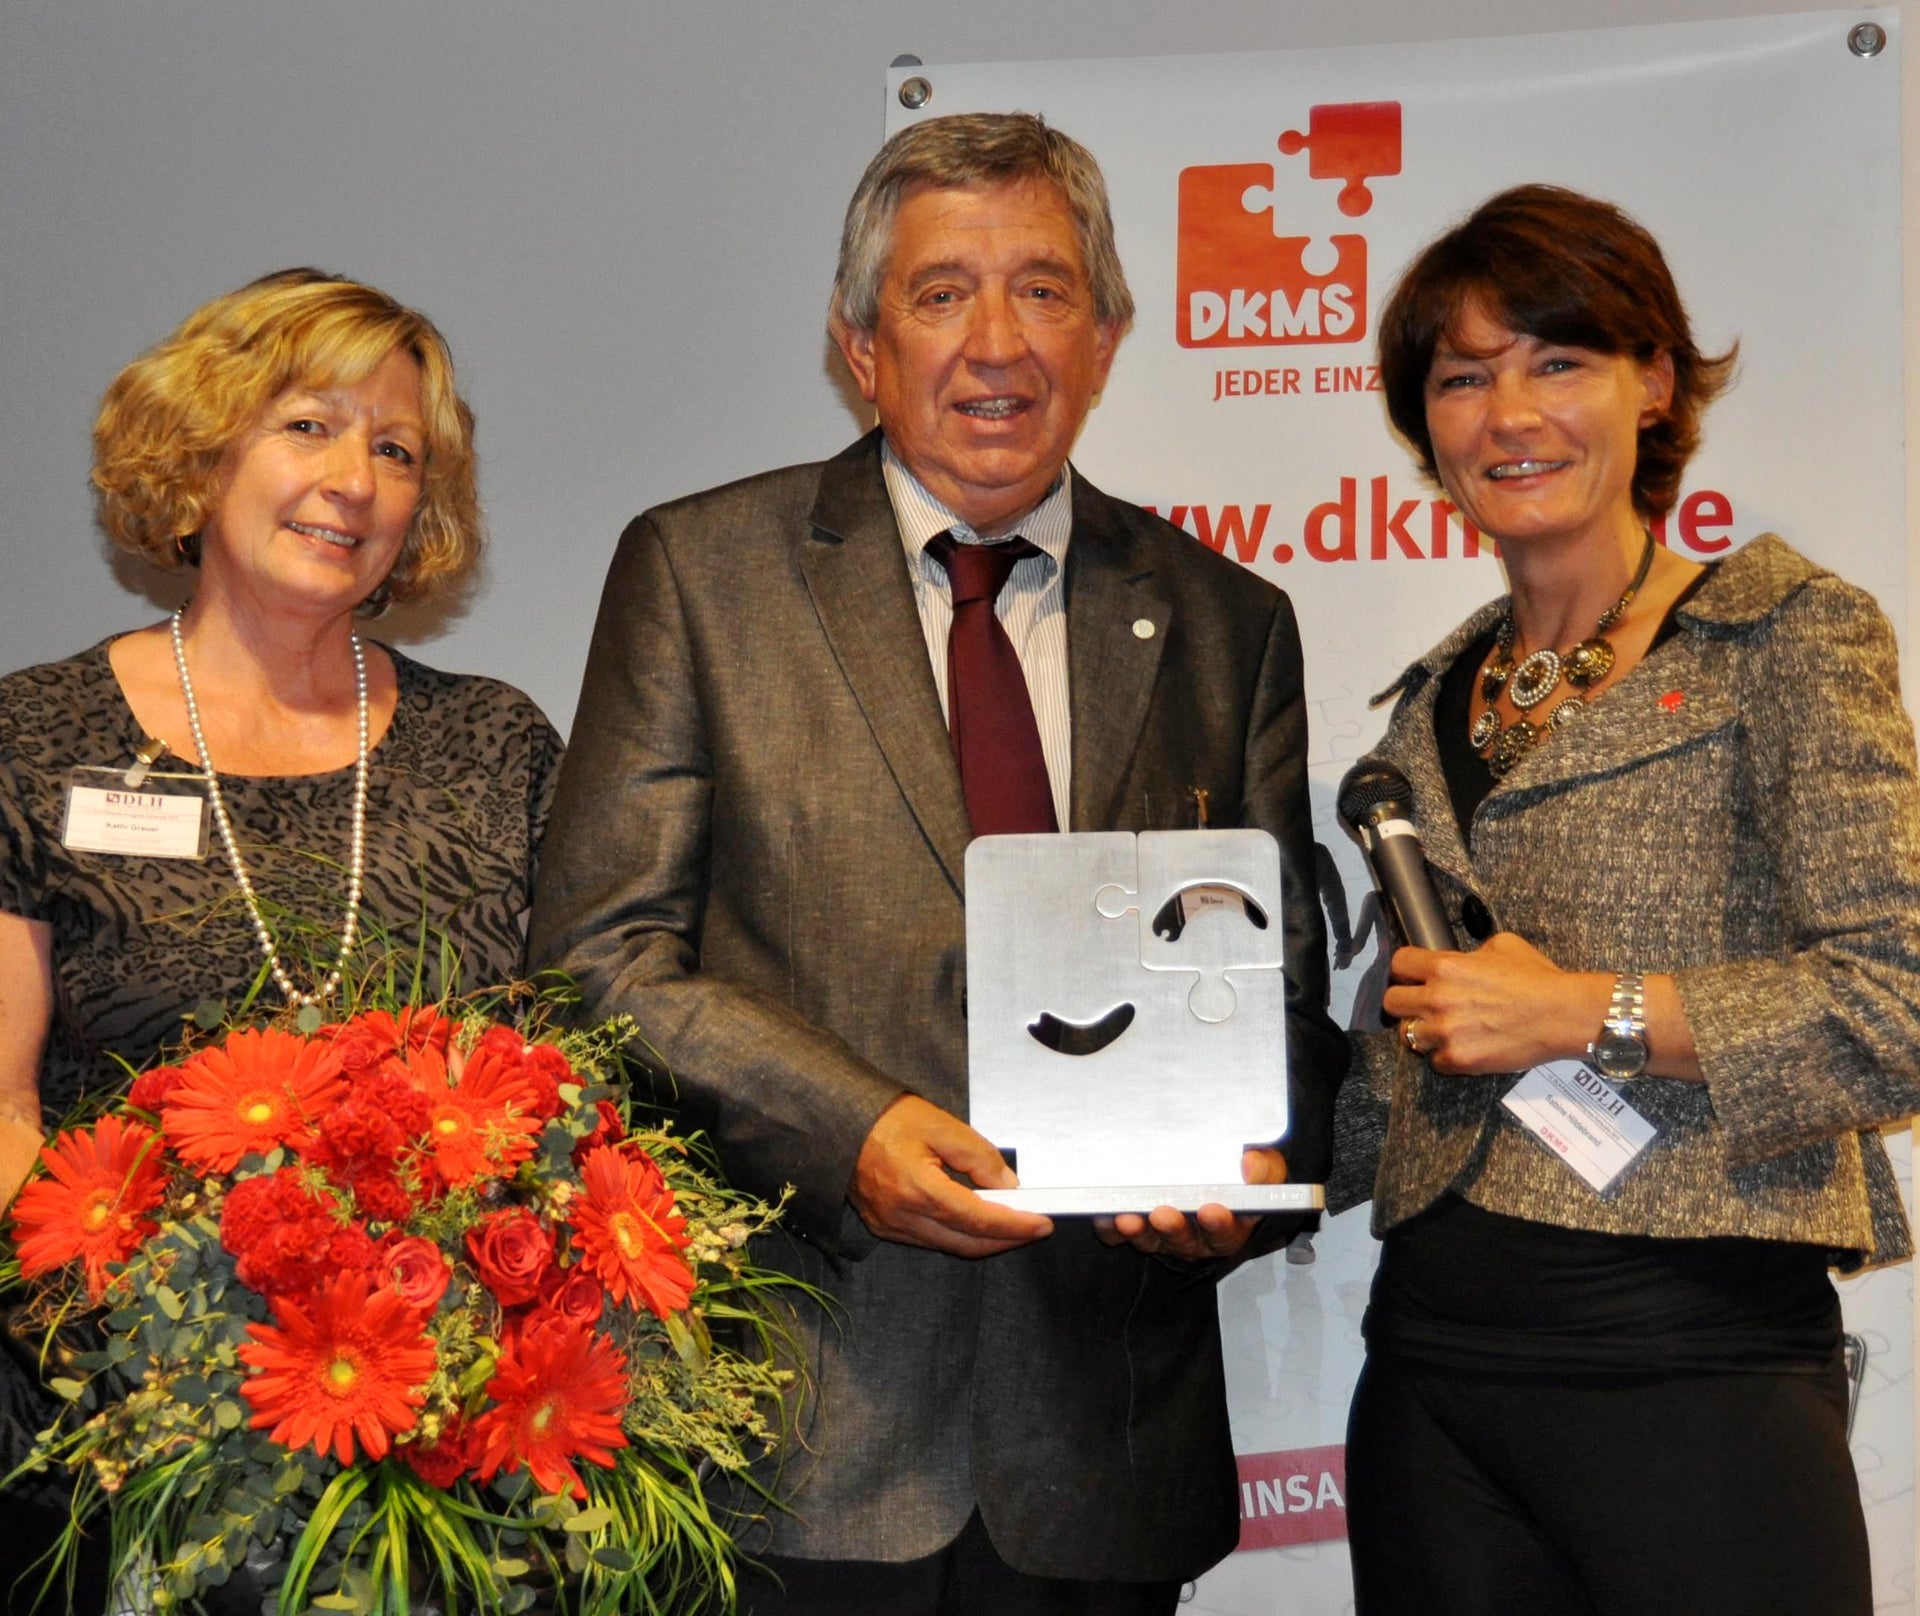 Für ihr außerordentliches Engagement bekam die Hilfsgruppe Eifel den DKMS Ehrenamtspreis 2009 verliehen. Sabine Hildebrand (rechts) übergab den Preis an Willi und Kathi Greuel. Foto: Reiner Züll